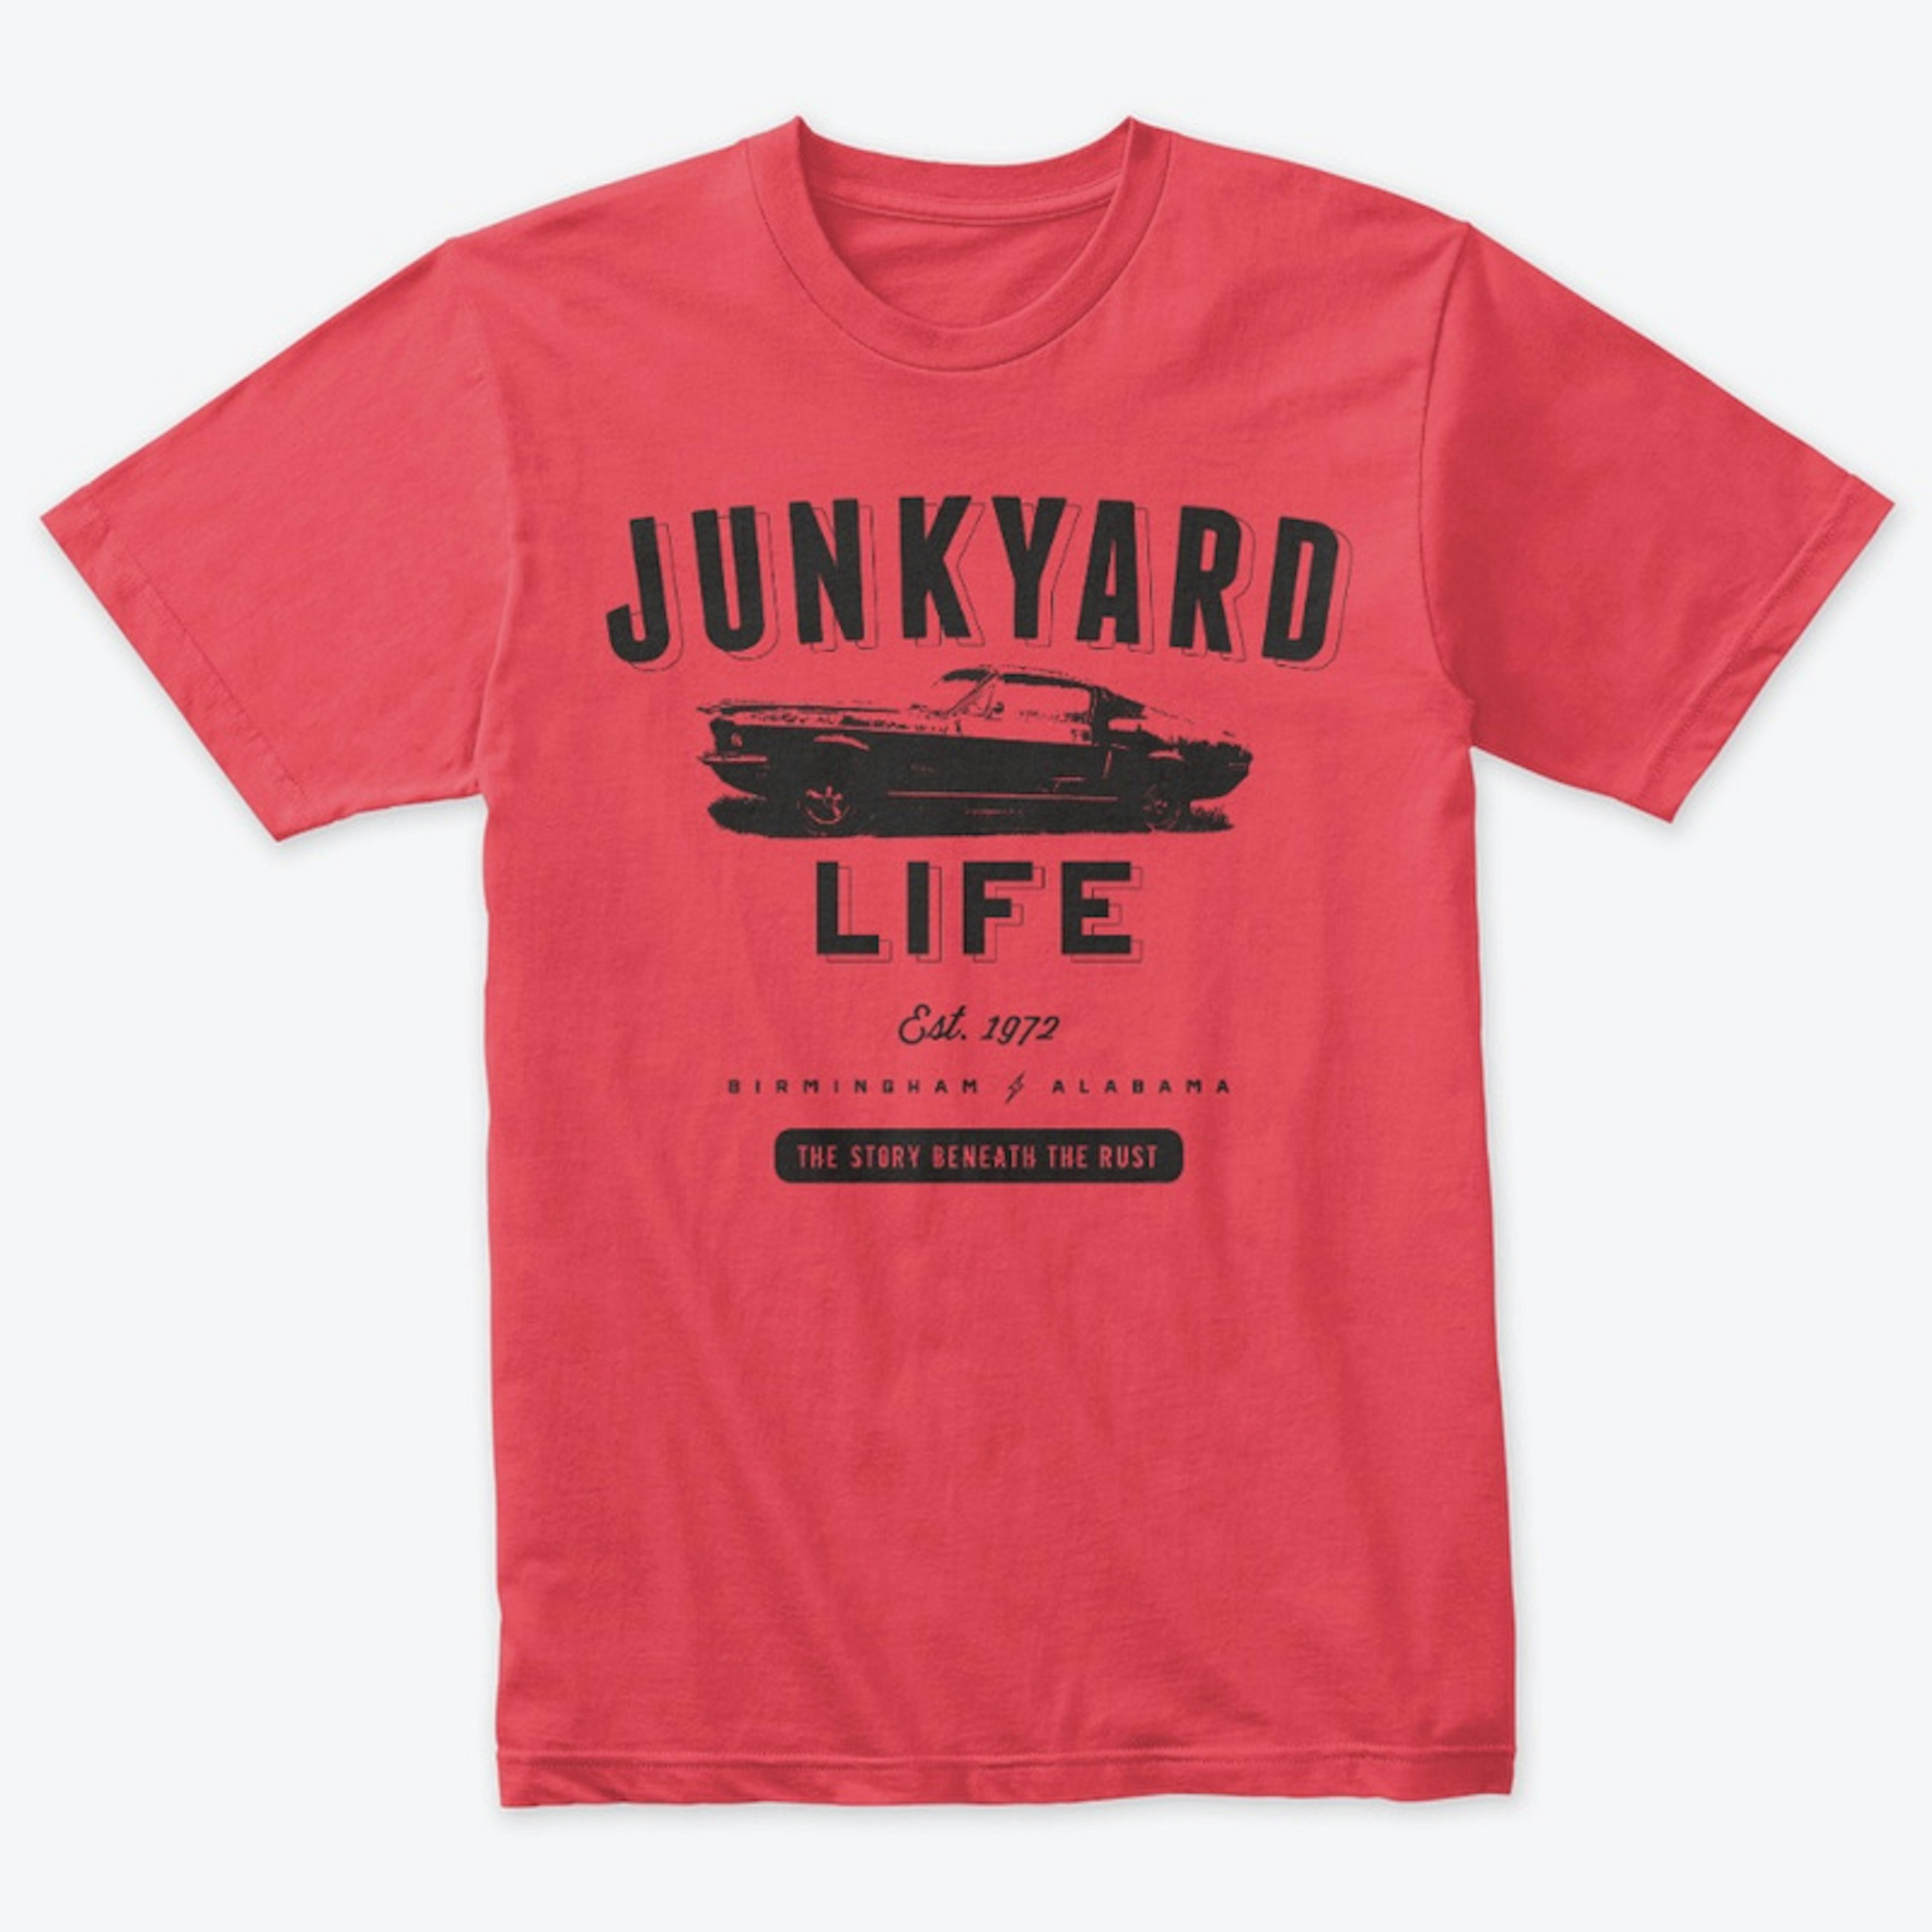 Junkyard Life First Edition Reissue